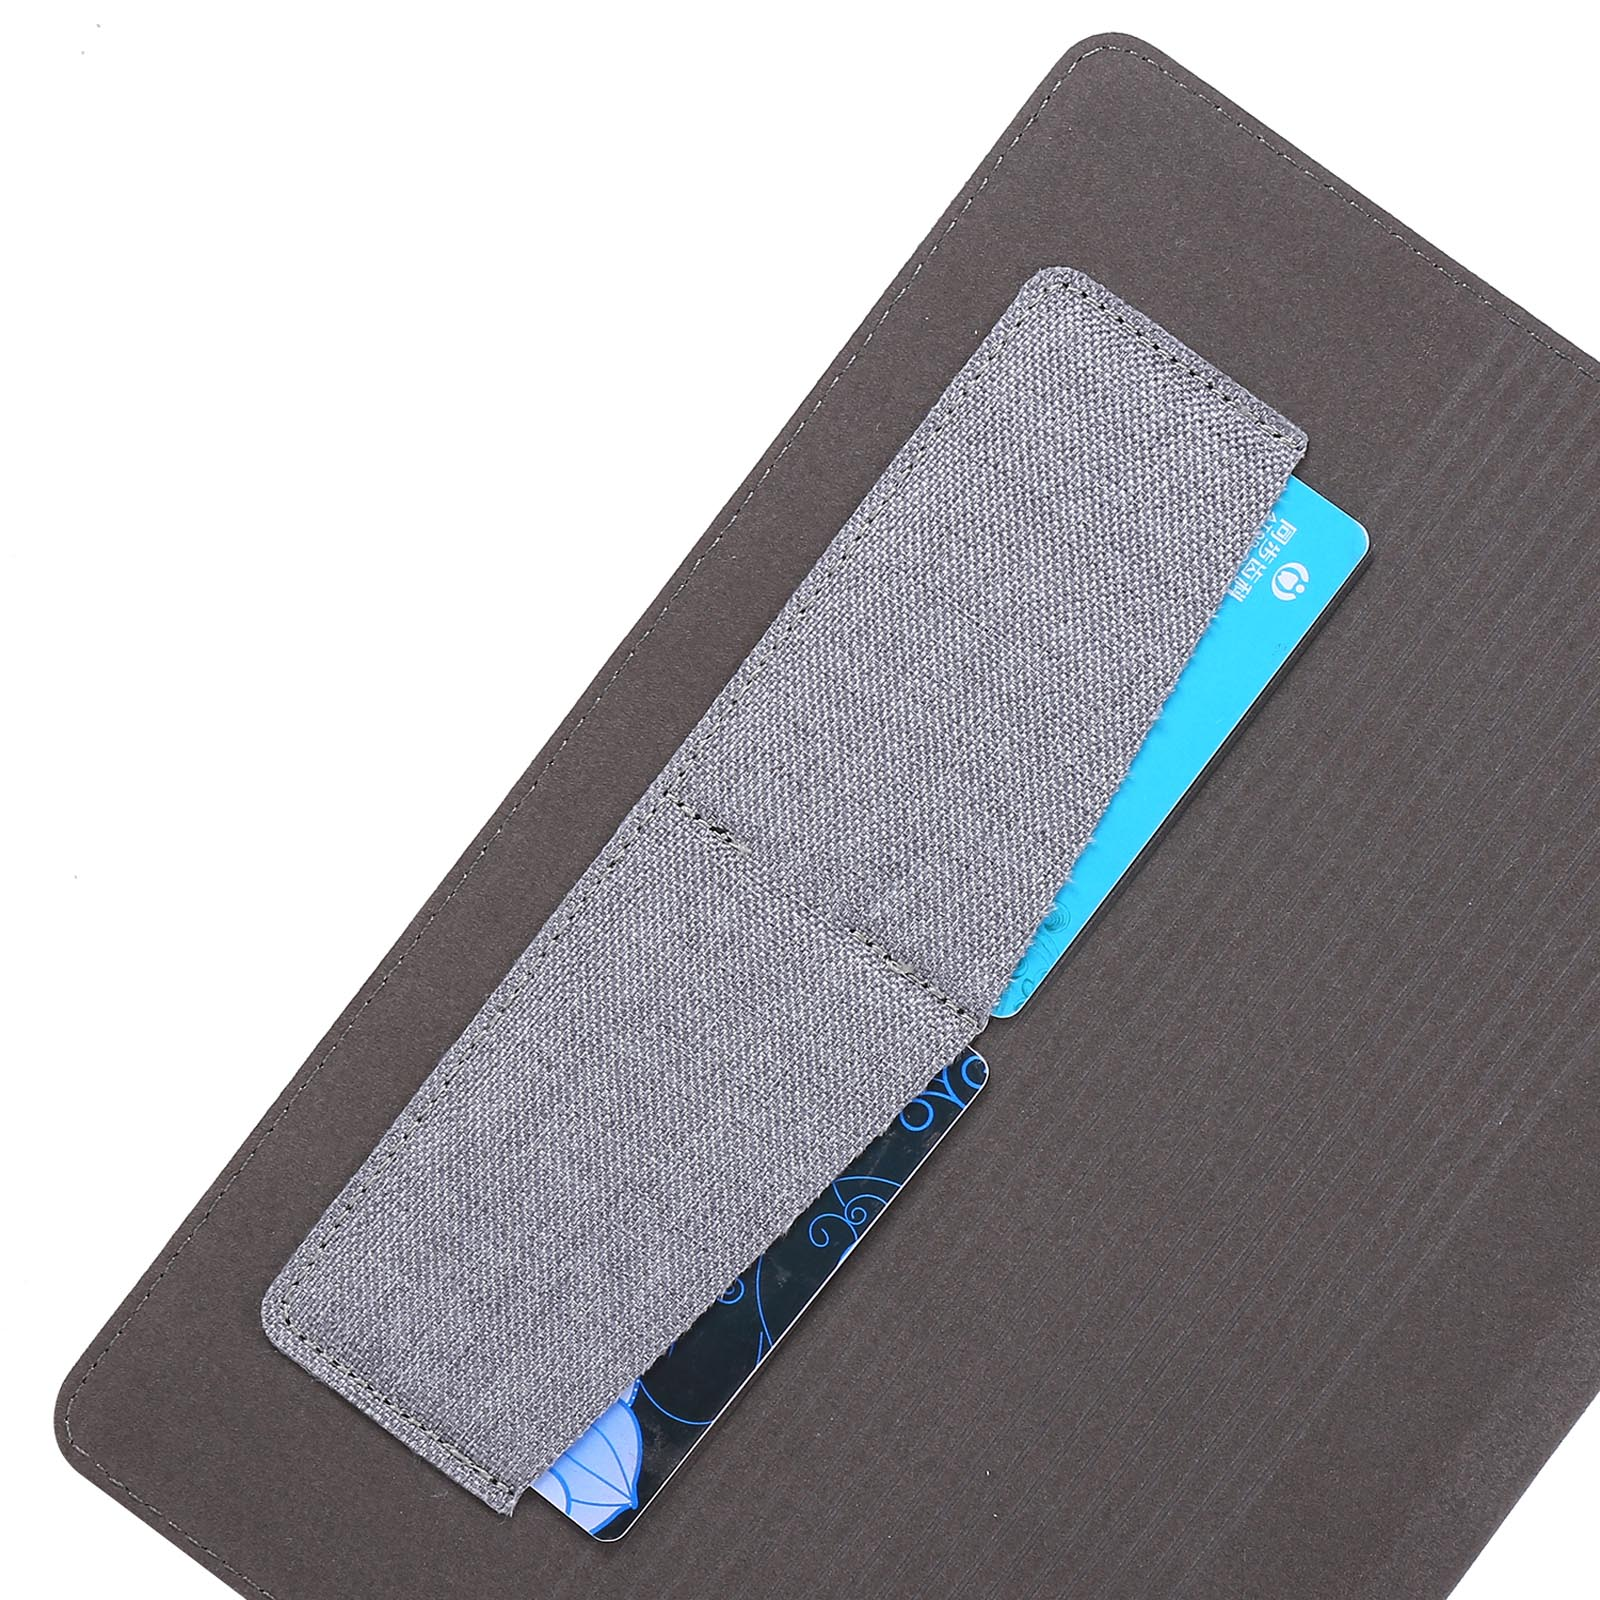 S6 SM-T860 10.5 LOBWERK Kunststoff, Blau Zoll Tab Hülle Schutzhülle Bookcover für Galaxy Samsung